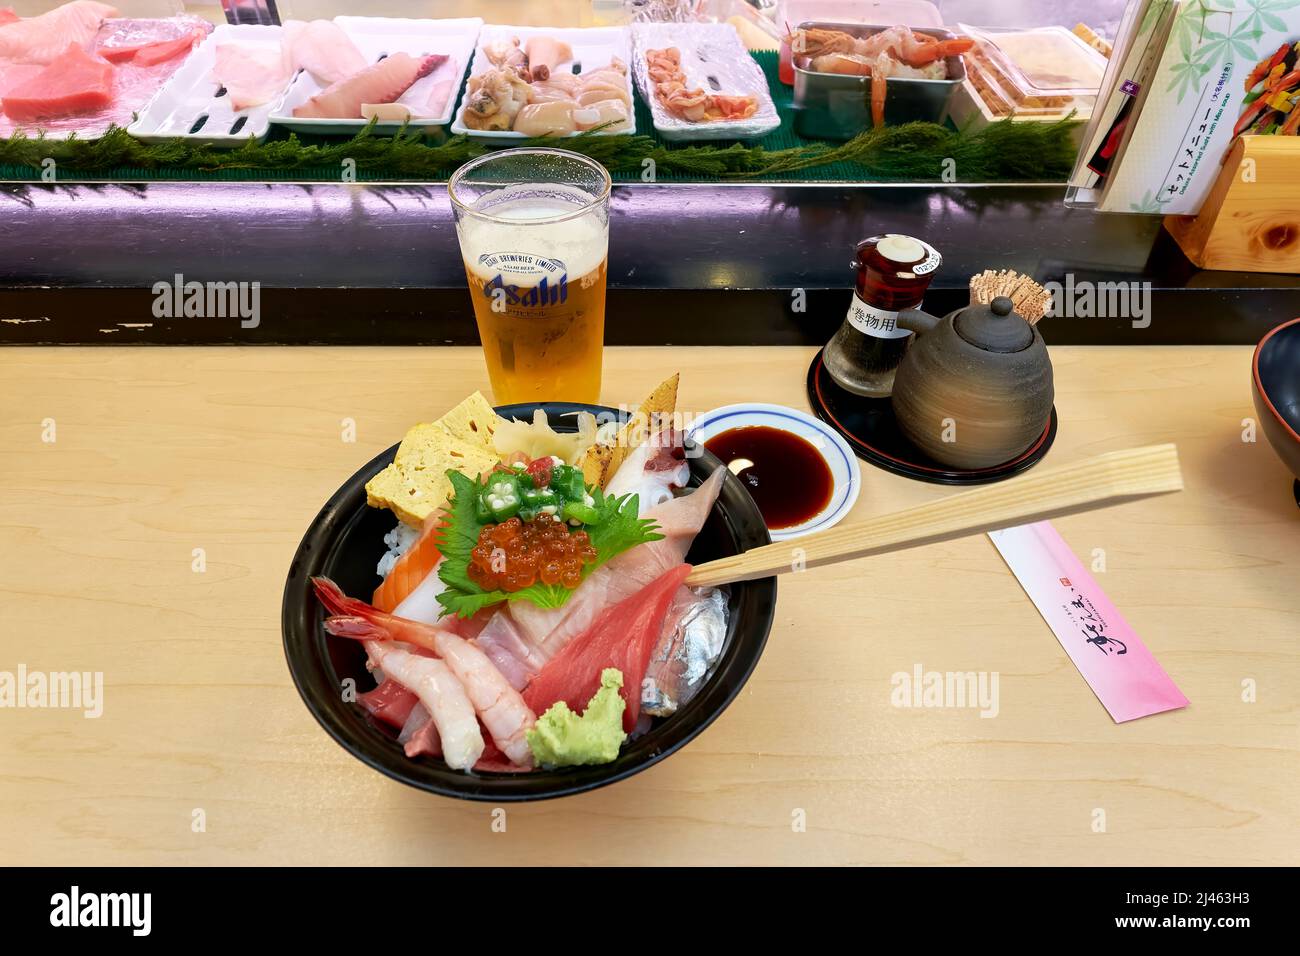 Japan. Tokyo. Sushi bar in Shibuya district Stock Photo